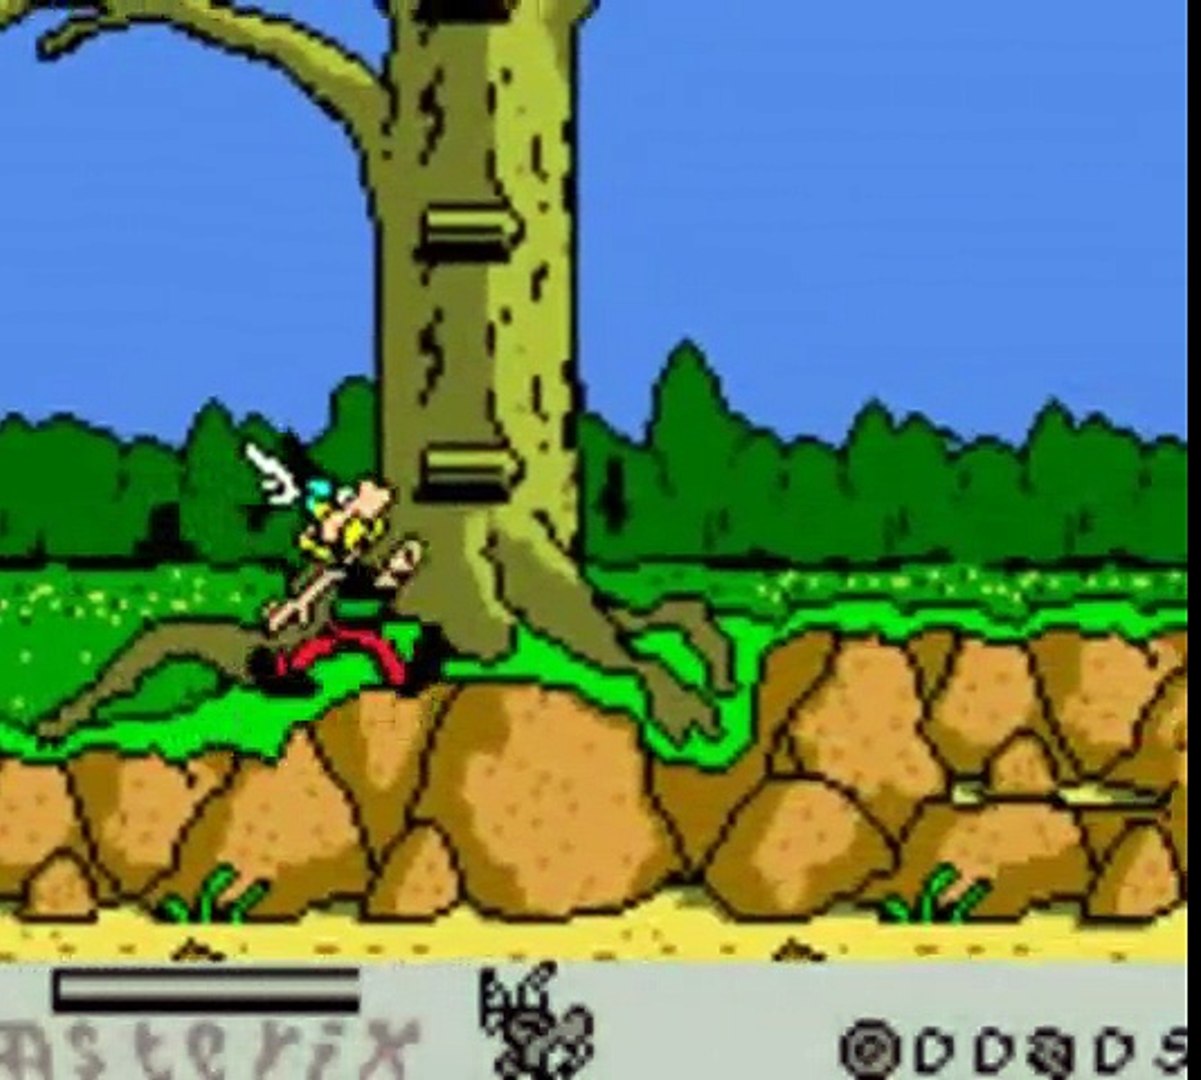 Astérix Sur la trace d'Idéfix Nintendo Game Boy Color